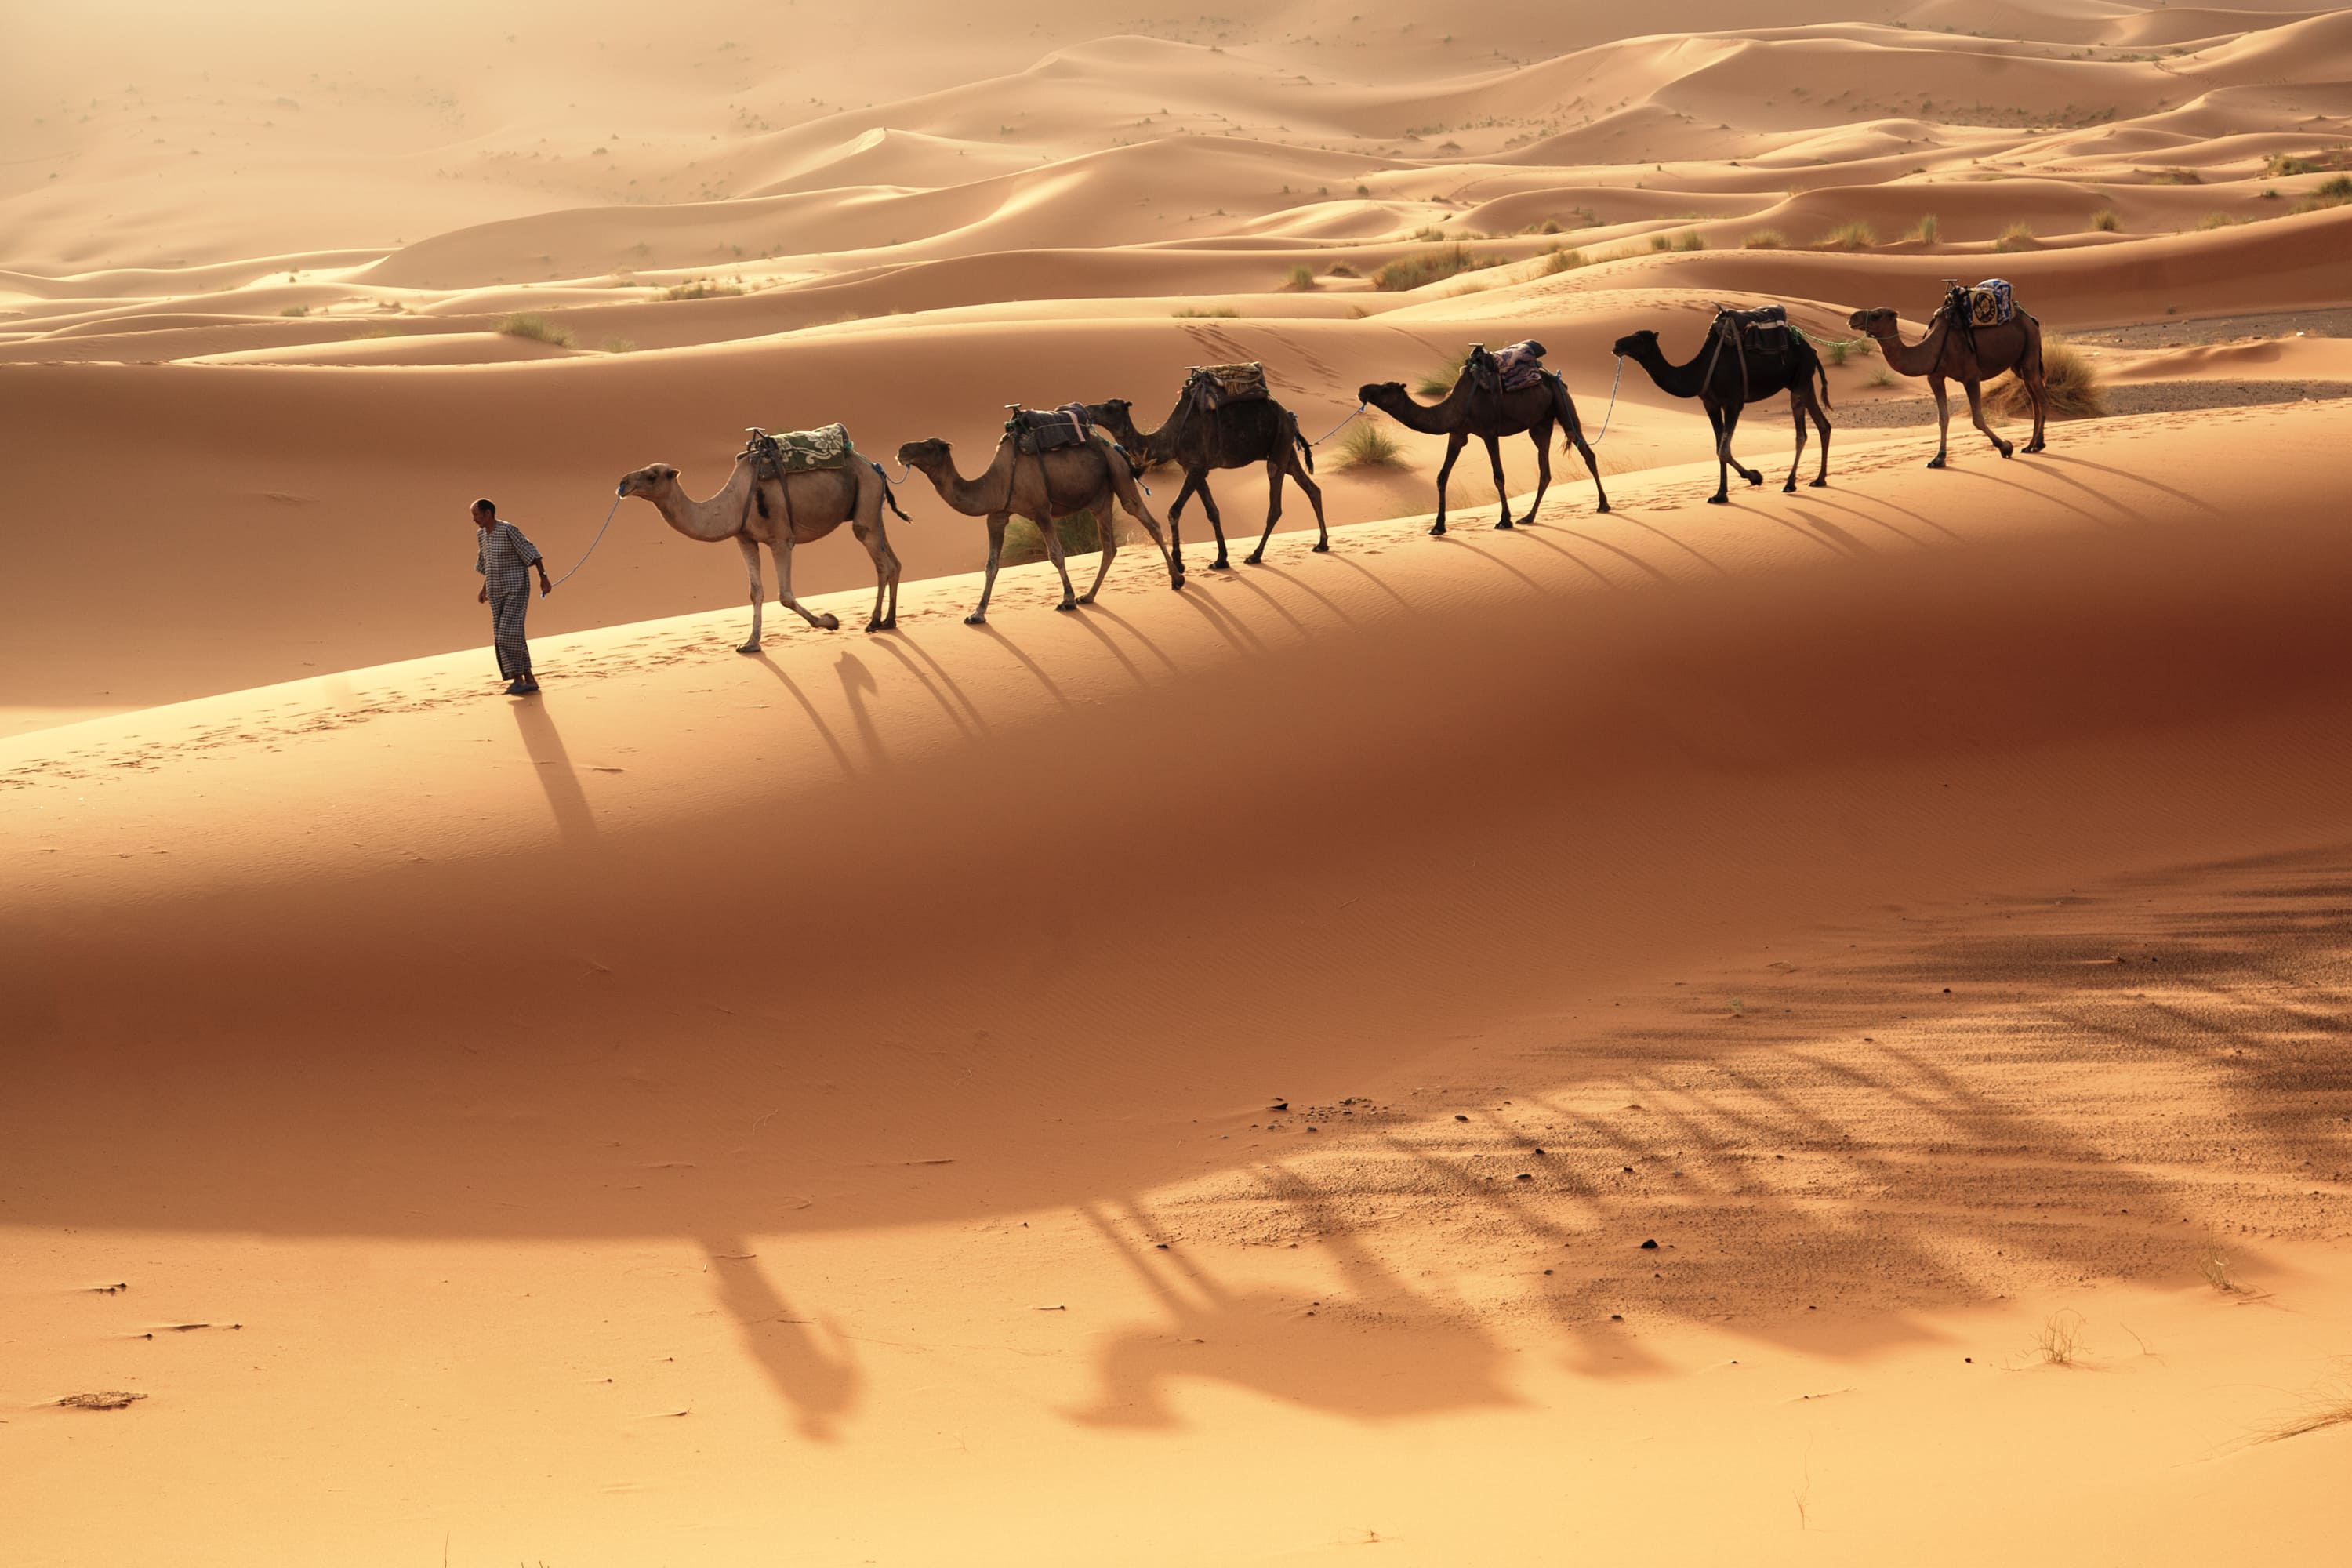 3000x2000, 378 Kb / караван, верблюды, пустыня, песок, мужчина